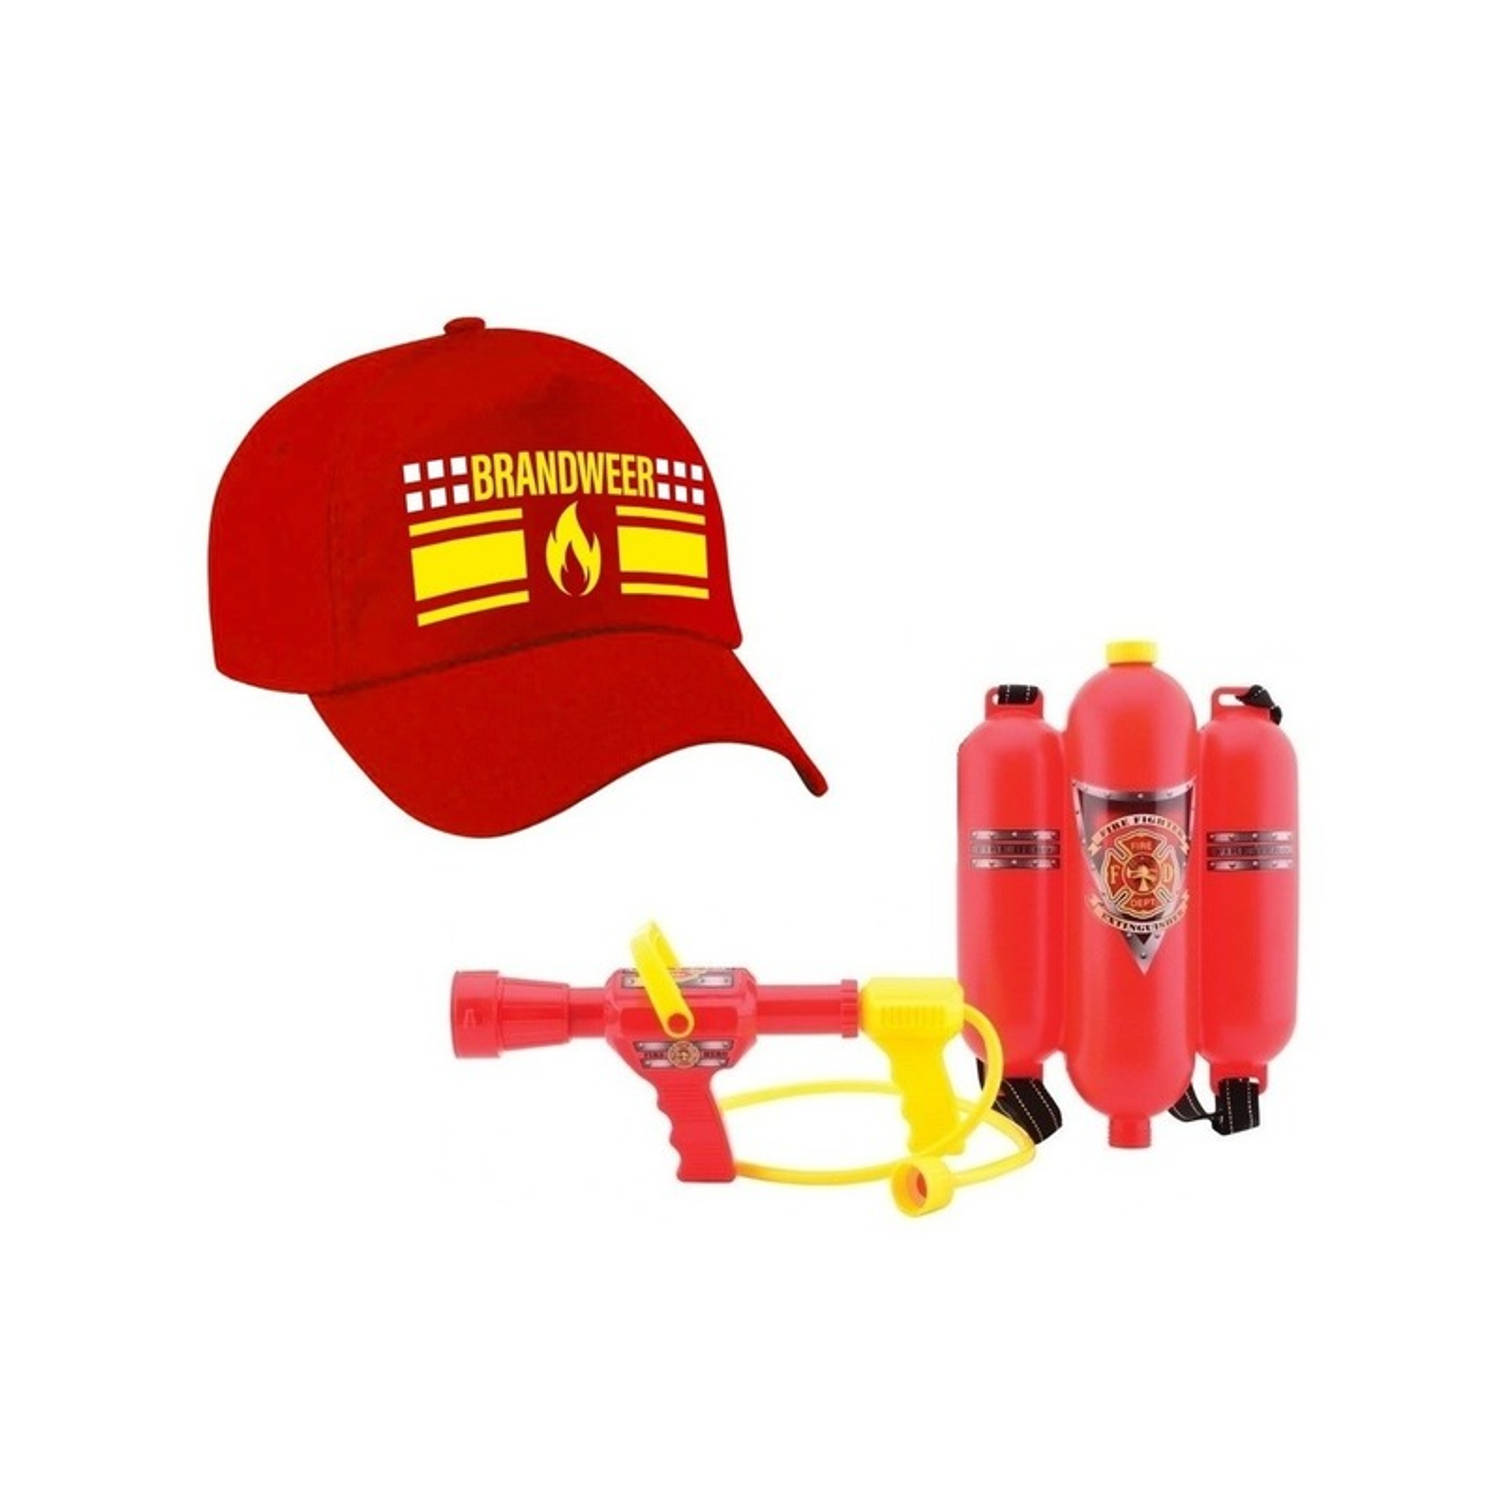 Brandweer met vlam carnaval pet met waterpistool brandblusser Verkleedattributen